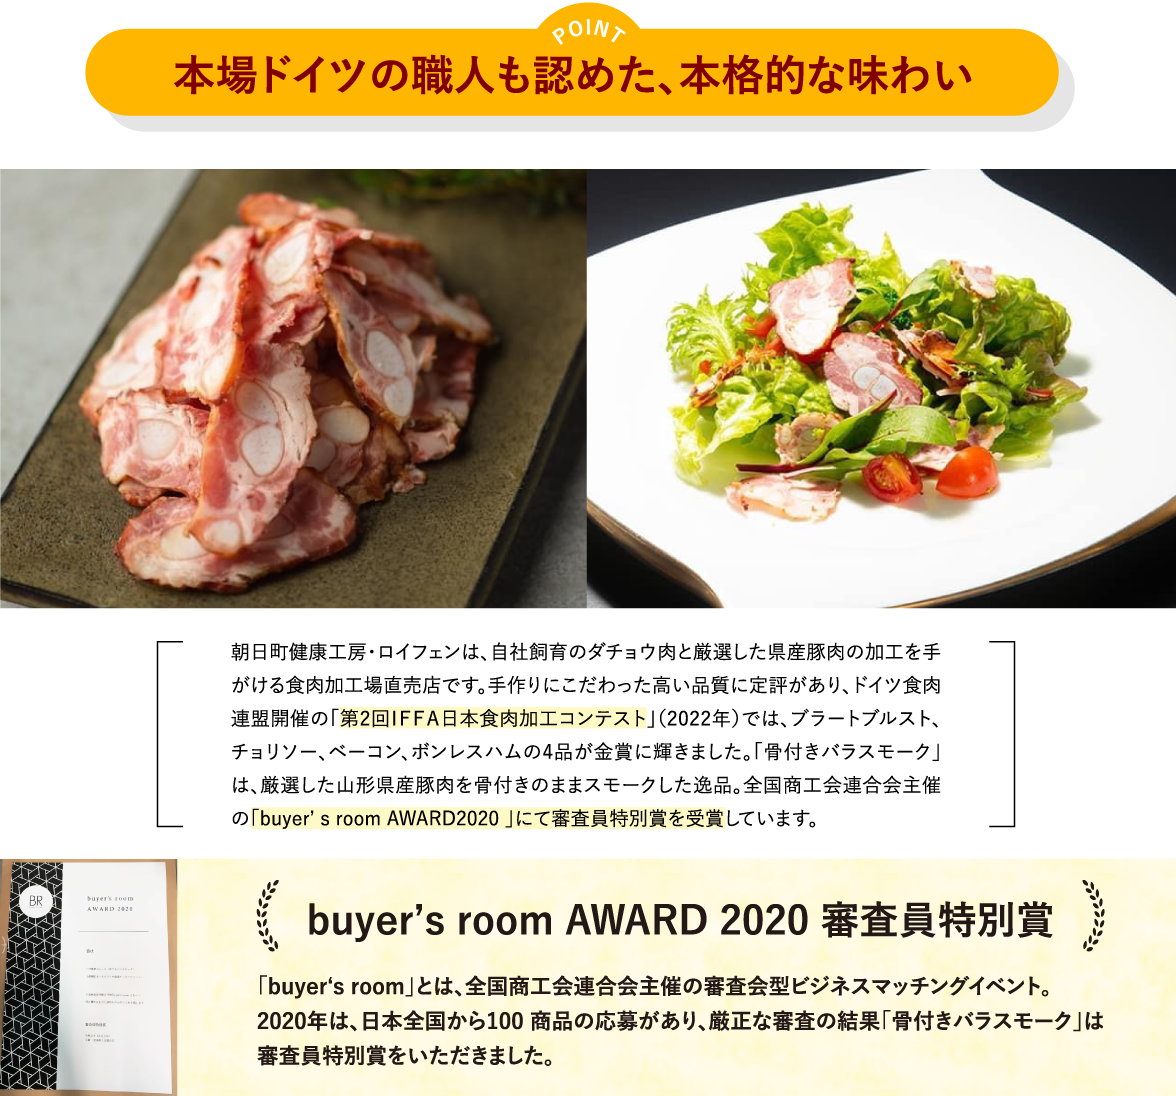 ポイント「本場ドイツの職人も認めた、本格的な味わい」／朝日町健康工房・ロイフェンは、自社飼育のダチョウ肉と厳選した県産豚肉の加工を手がける食肉加工場直売店です。手作りにこだわった高い品質に定評があり、ドイツ食肉連盟開催の「第2回ＩＦＦＡ日本食肉加工コンテスト」（2022年）では、ブラートブルスト、チョリソー、ベーコン、ボンレスハムの4品が金賞に輝きました。「骨付きバラスモーク」は、厳選した山形県産豚肉を骨付きのままスモークした逸品。全国商工会連合会主催の「buyer7s room AWARD2020 」にて審査員特別賞を受賞しています。